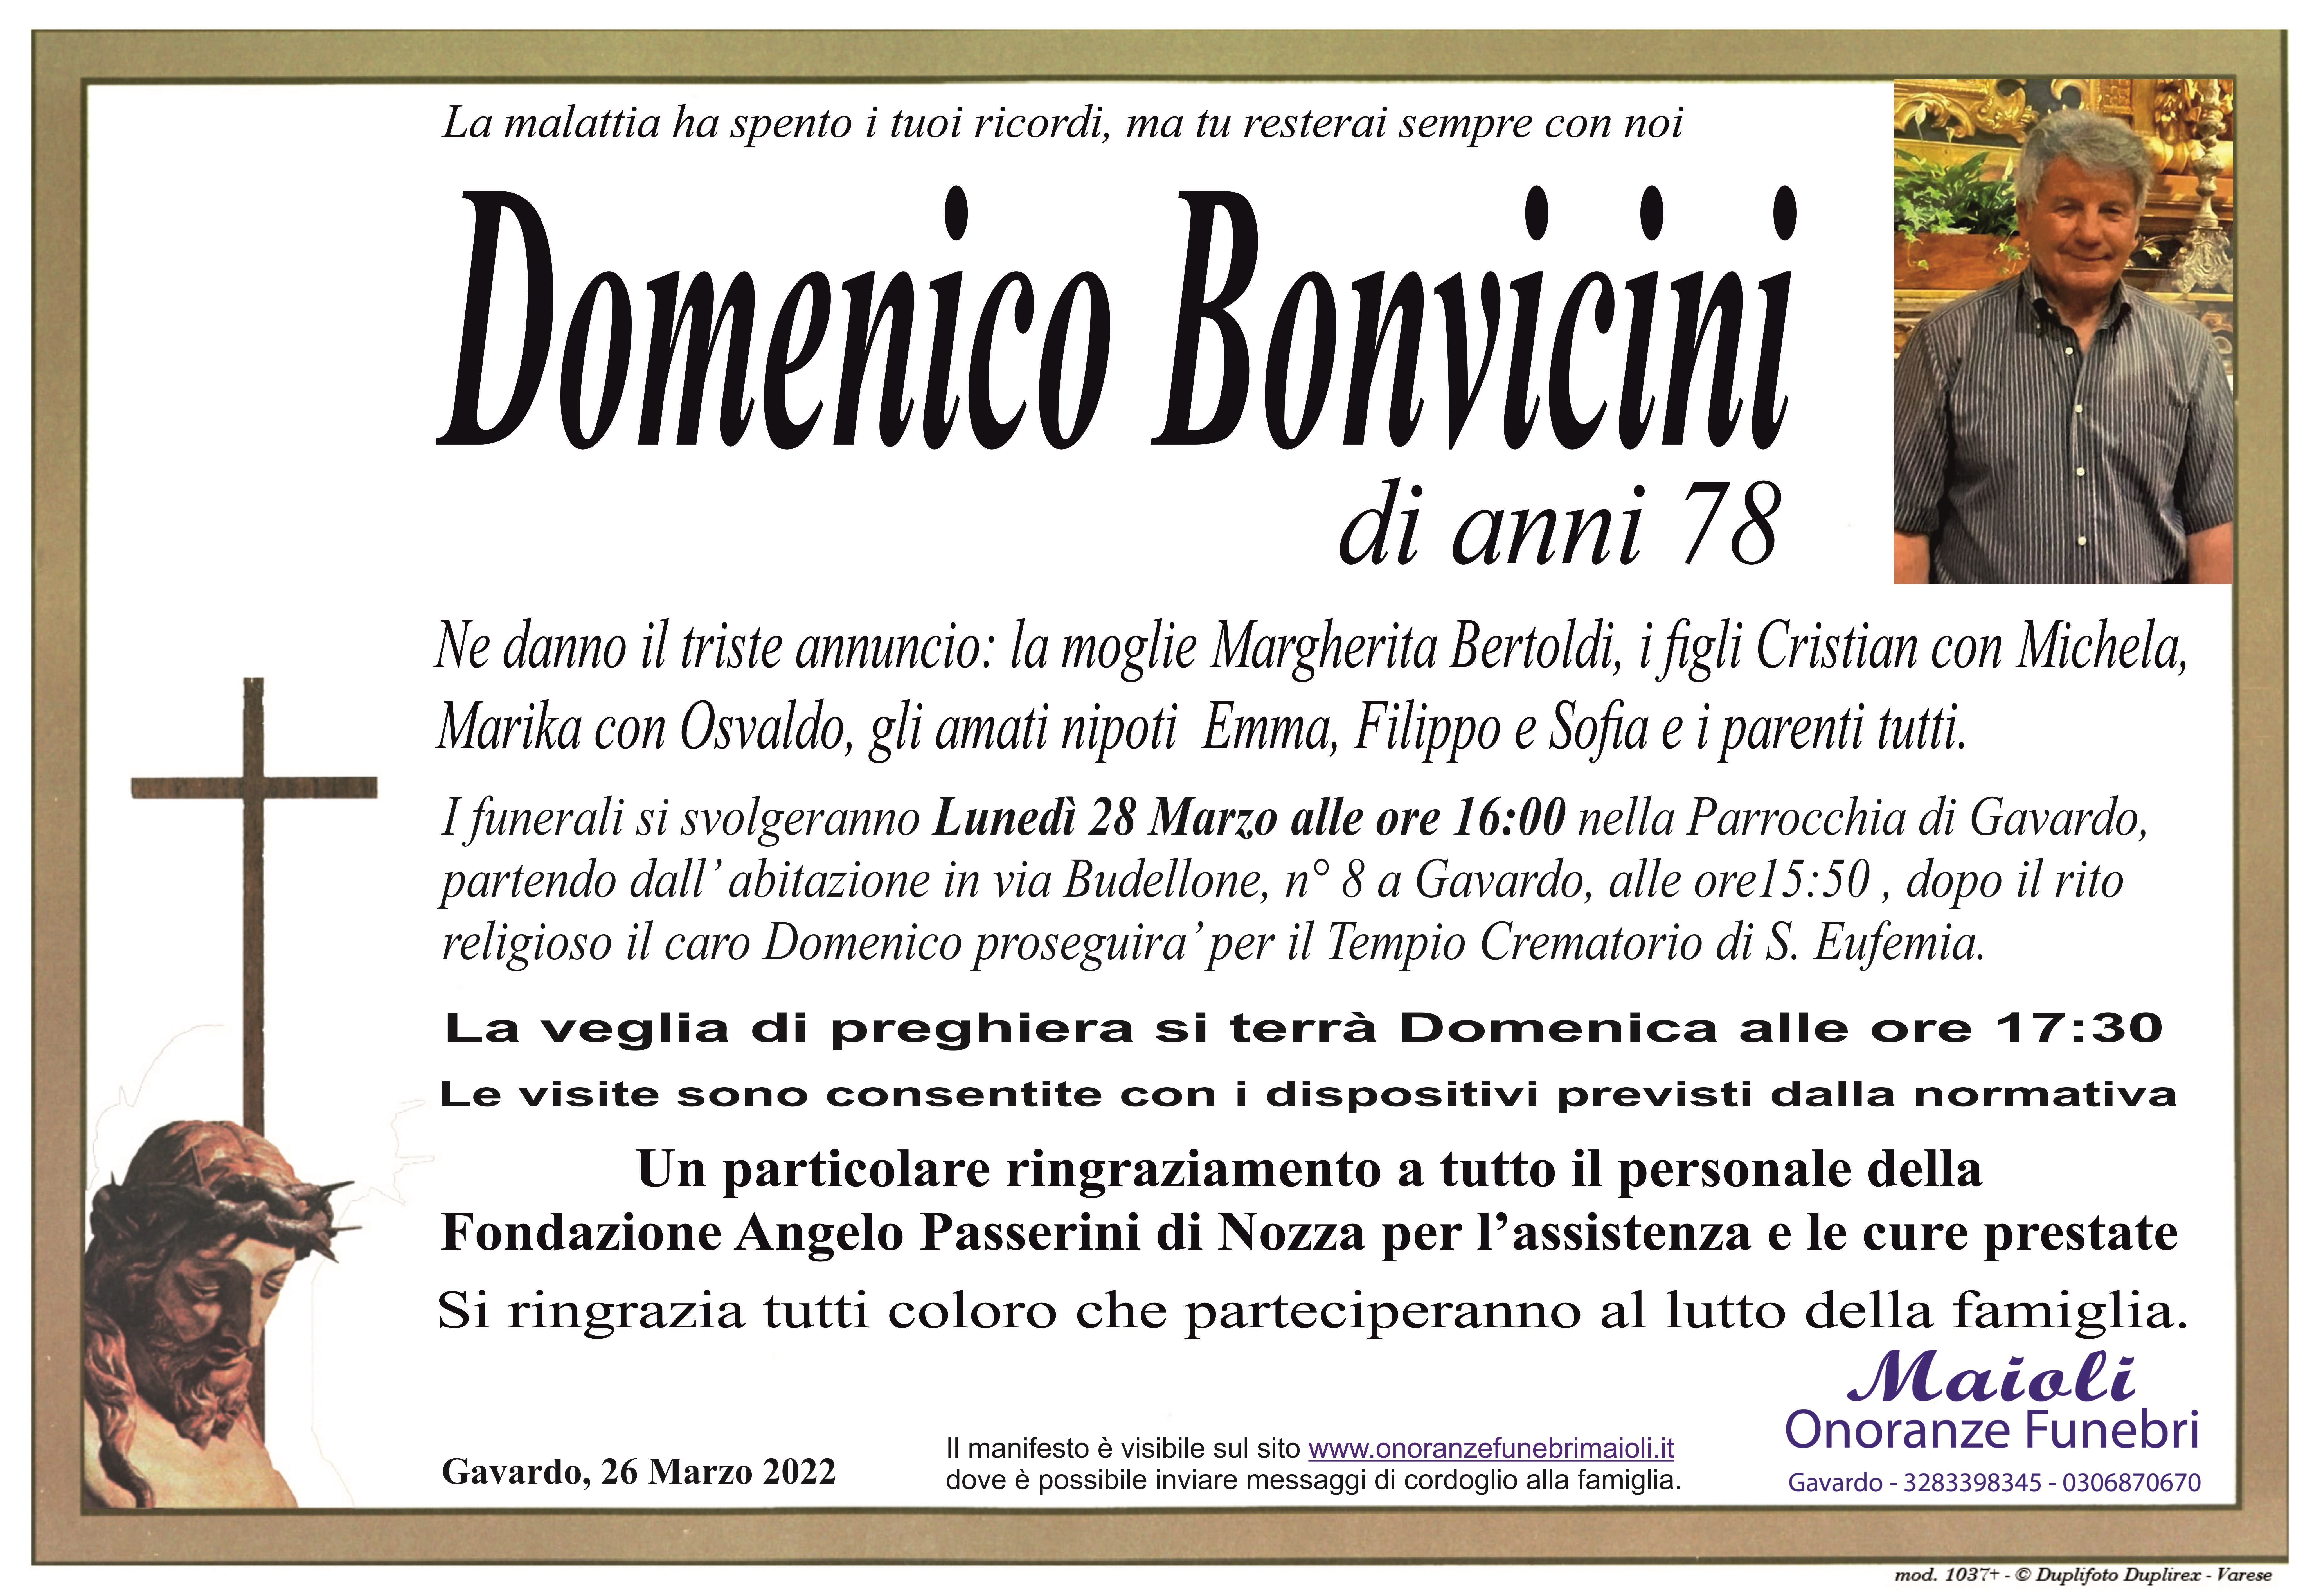 Domenico Bonvicini